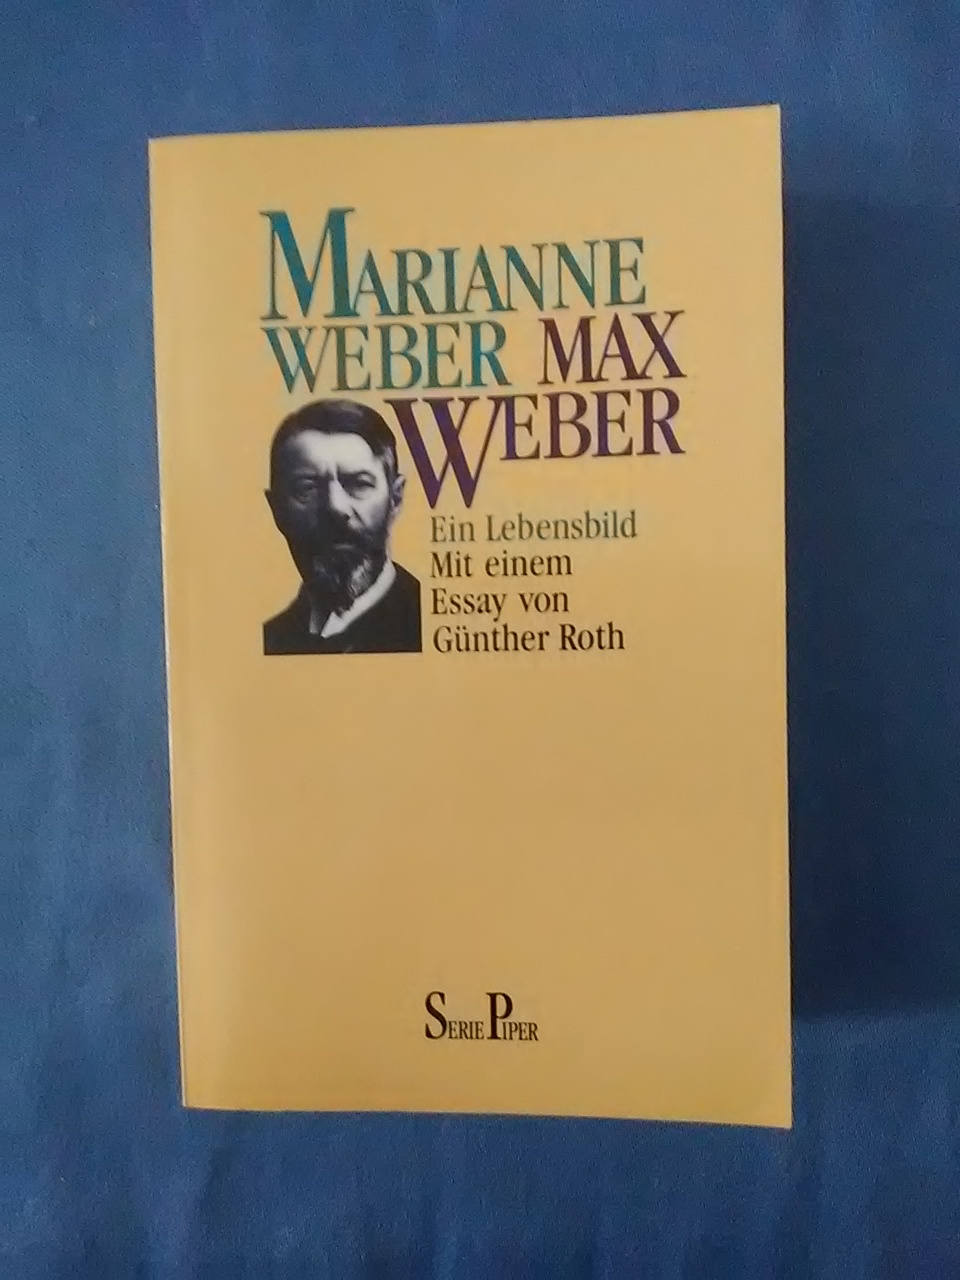 Max Weber : ein Lebensbild. von. Mit e. Einl. von Günther Roth / Piper ; Bd. 984 - Weber, Marianne